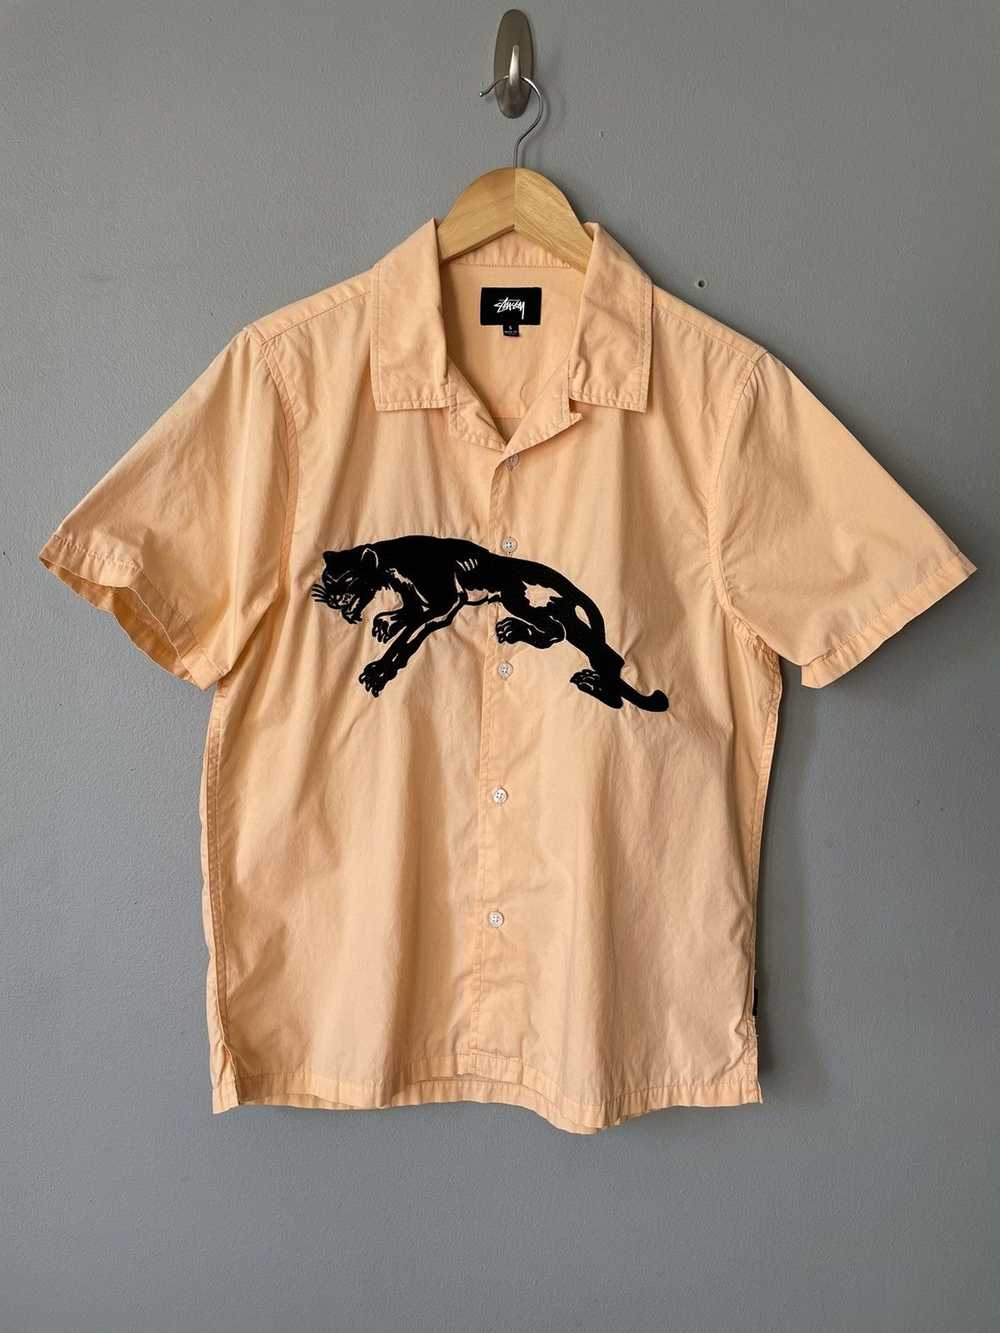 Stussy S/S18 Panther Camp Collar Shirt - image 1